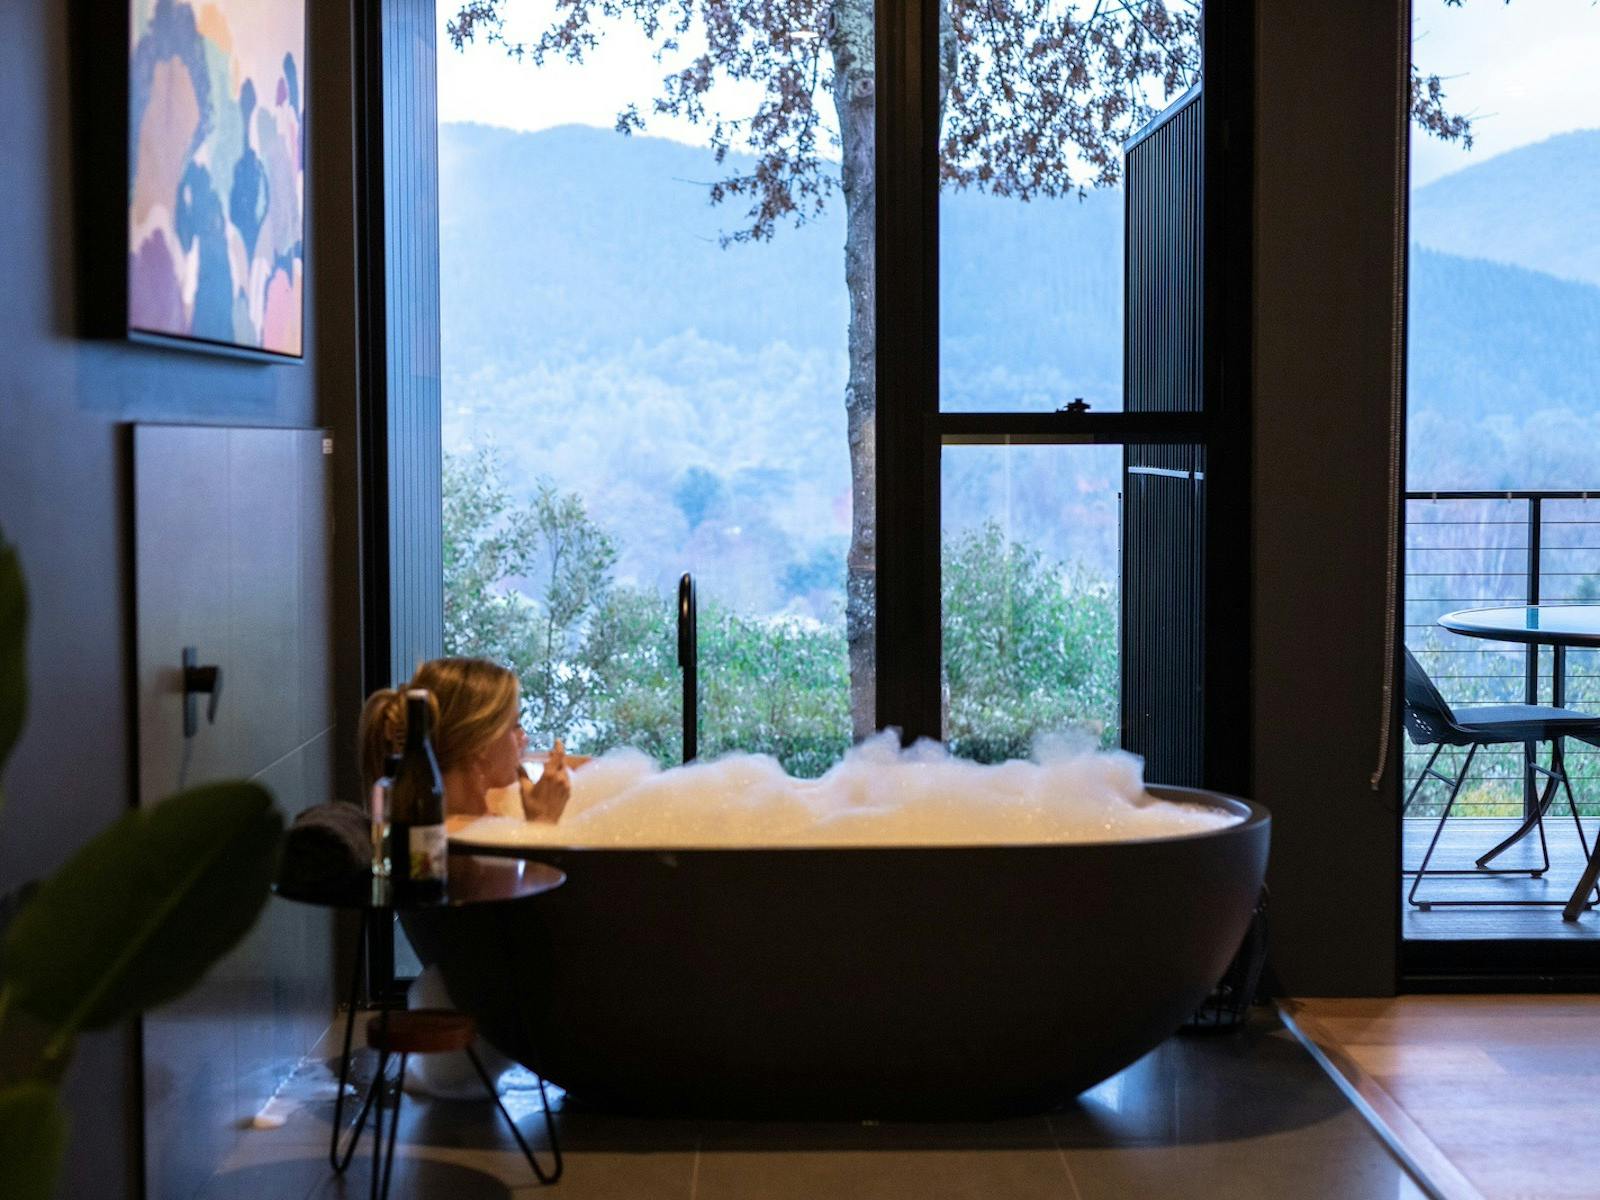 bathtub the view bright